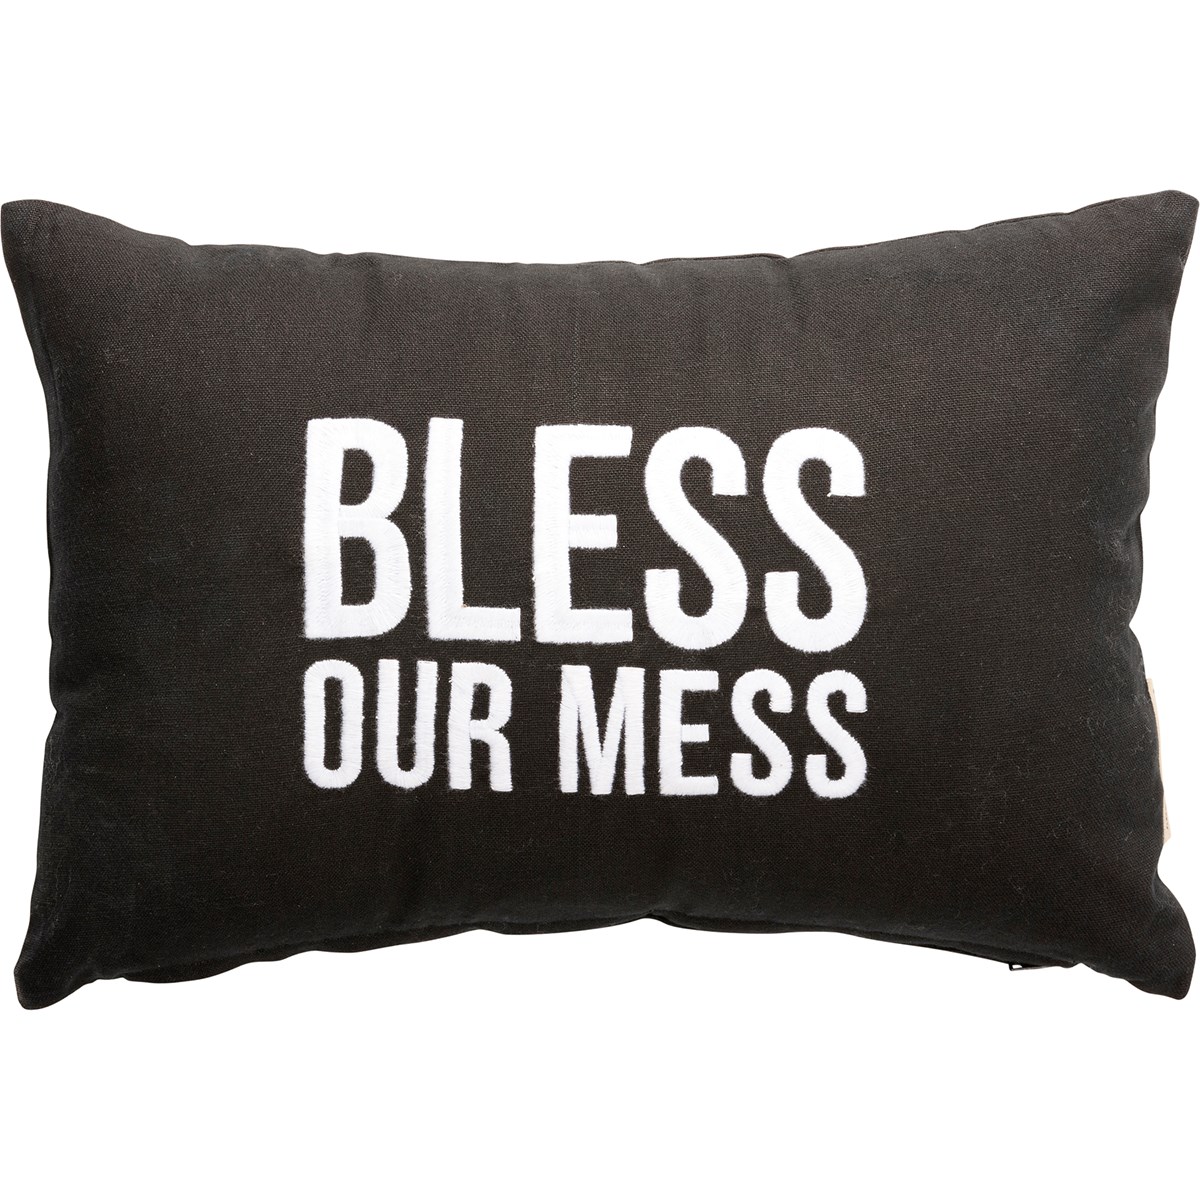 Bless Our Mess Pillow - Cotton, Zipper